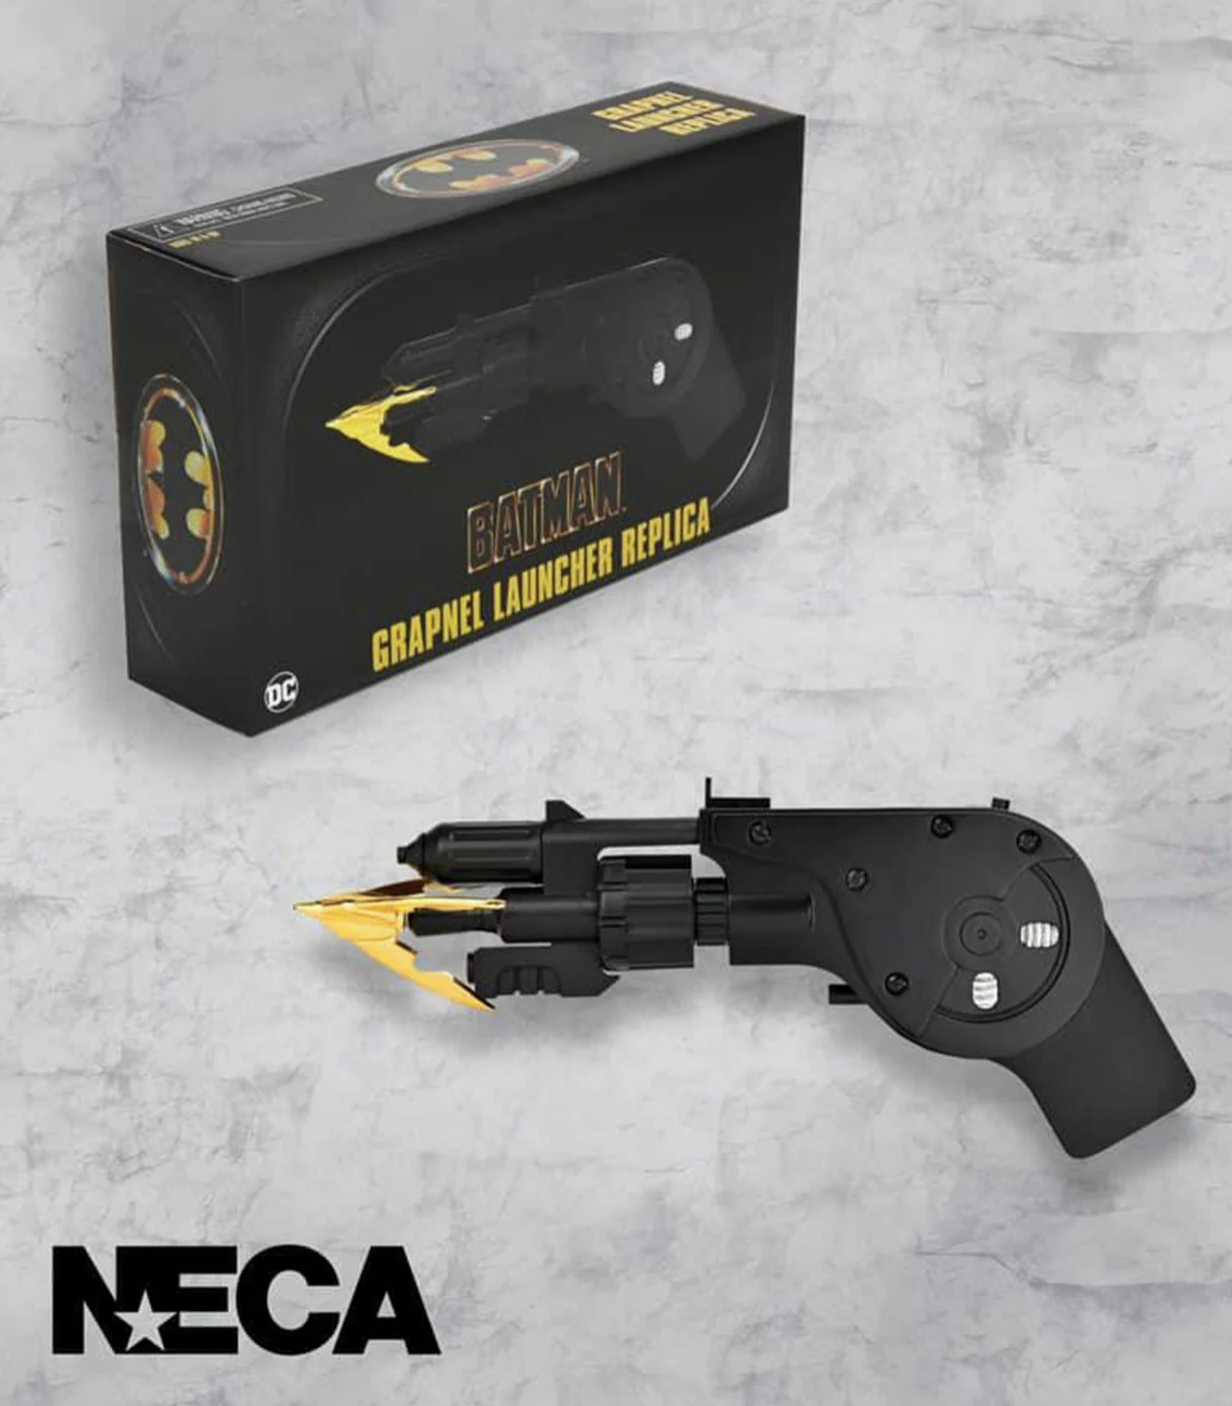 Check Out NECA's 1989 BATMAN Grapnel Launcher Replica Toy